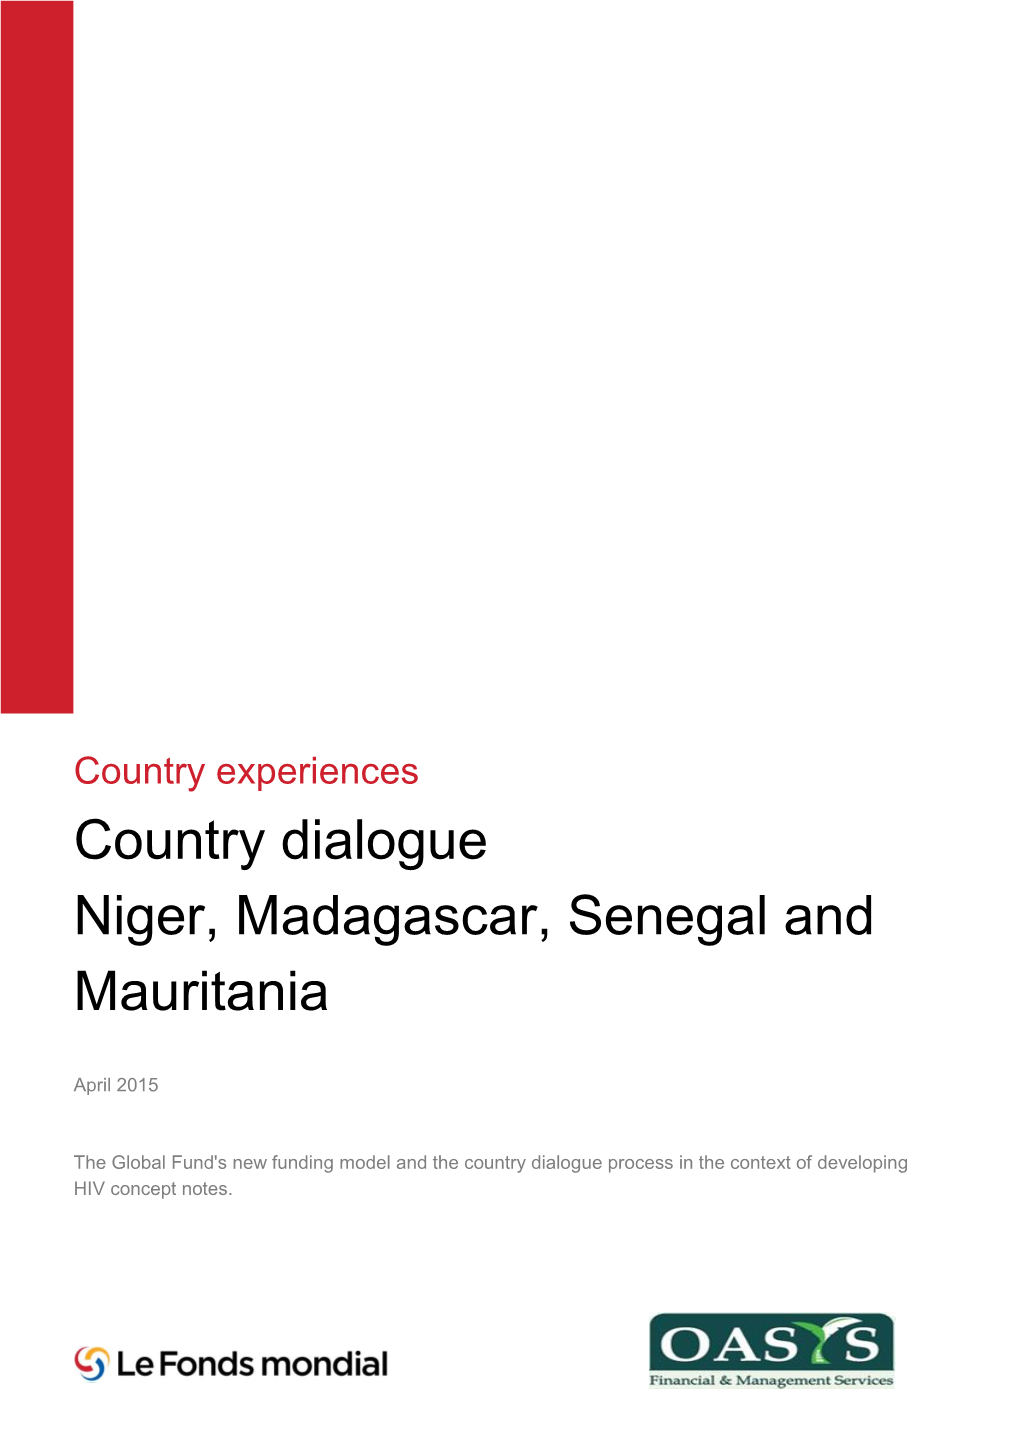 Country Dialogue Niger, Madagascar, Senegal and Mauritania